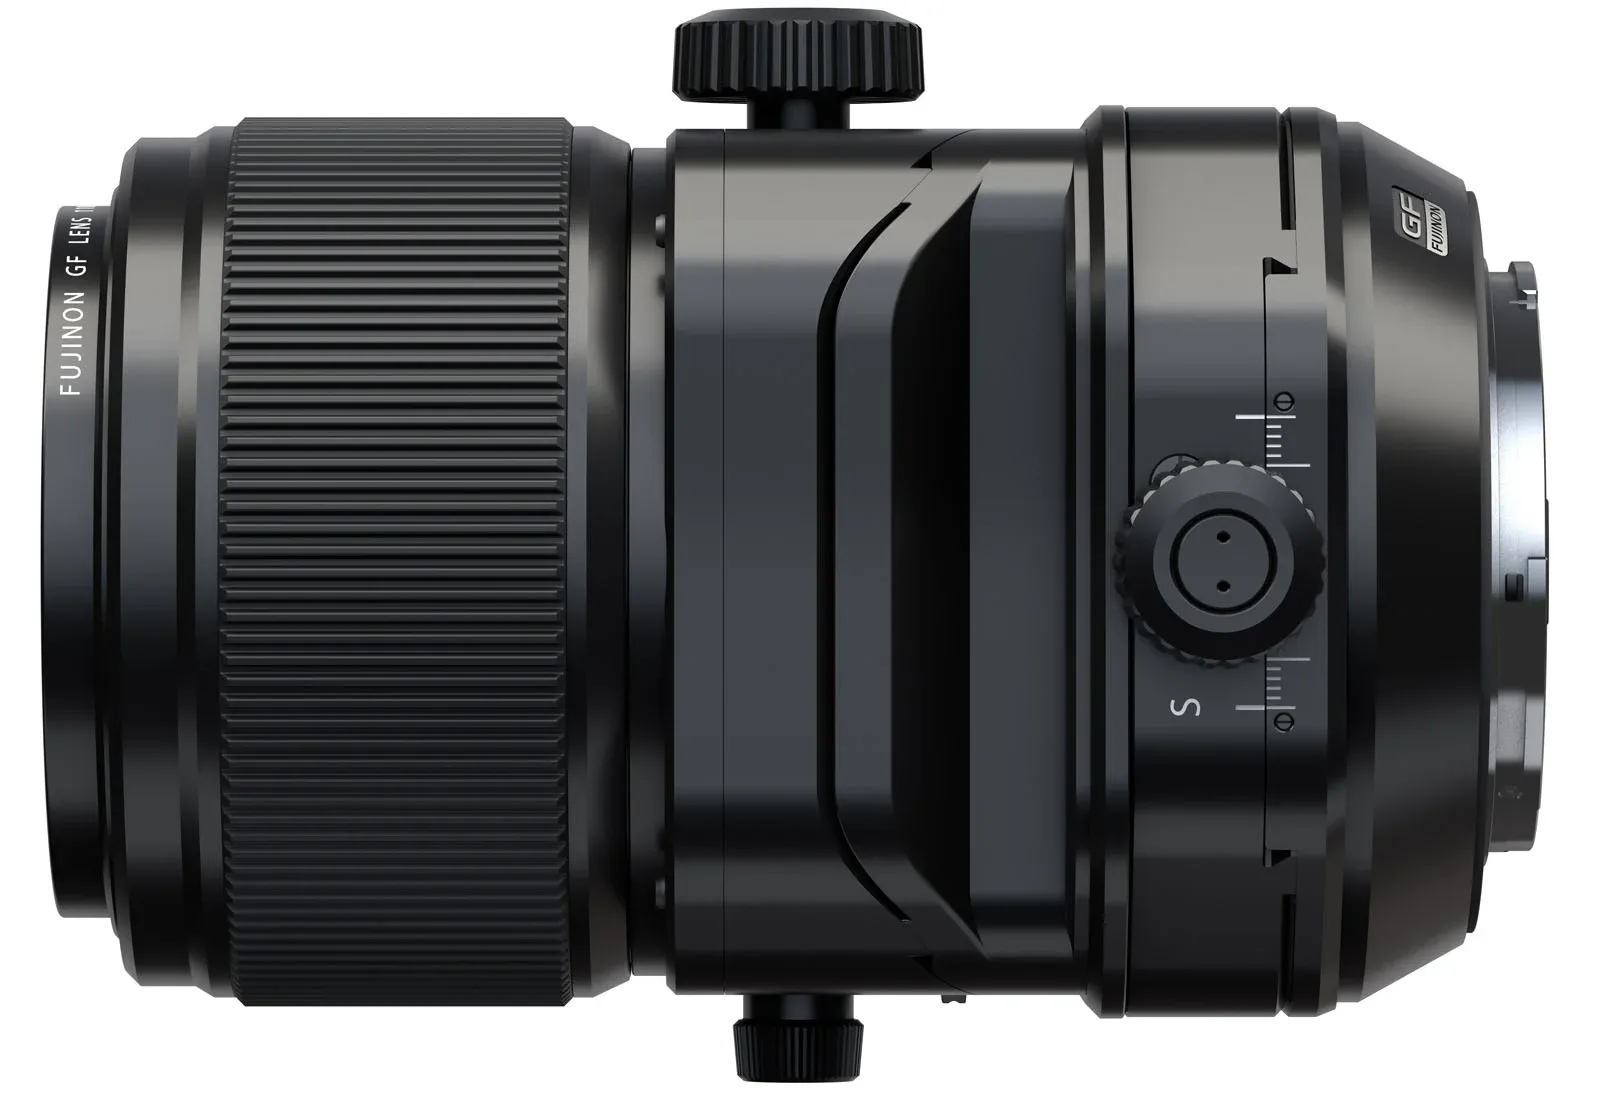 Fujifilm ra mắt ống kính tilt shift GF 30mm F5.6 T/S và GF 110mm F5.6 T/S Macro